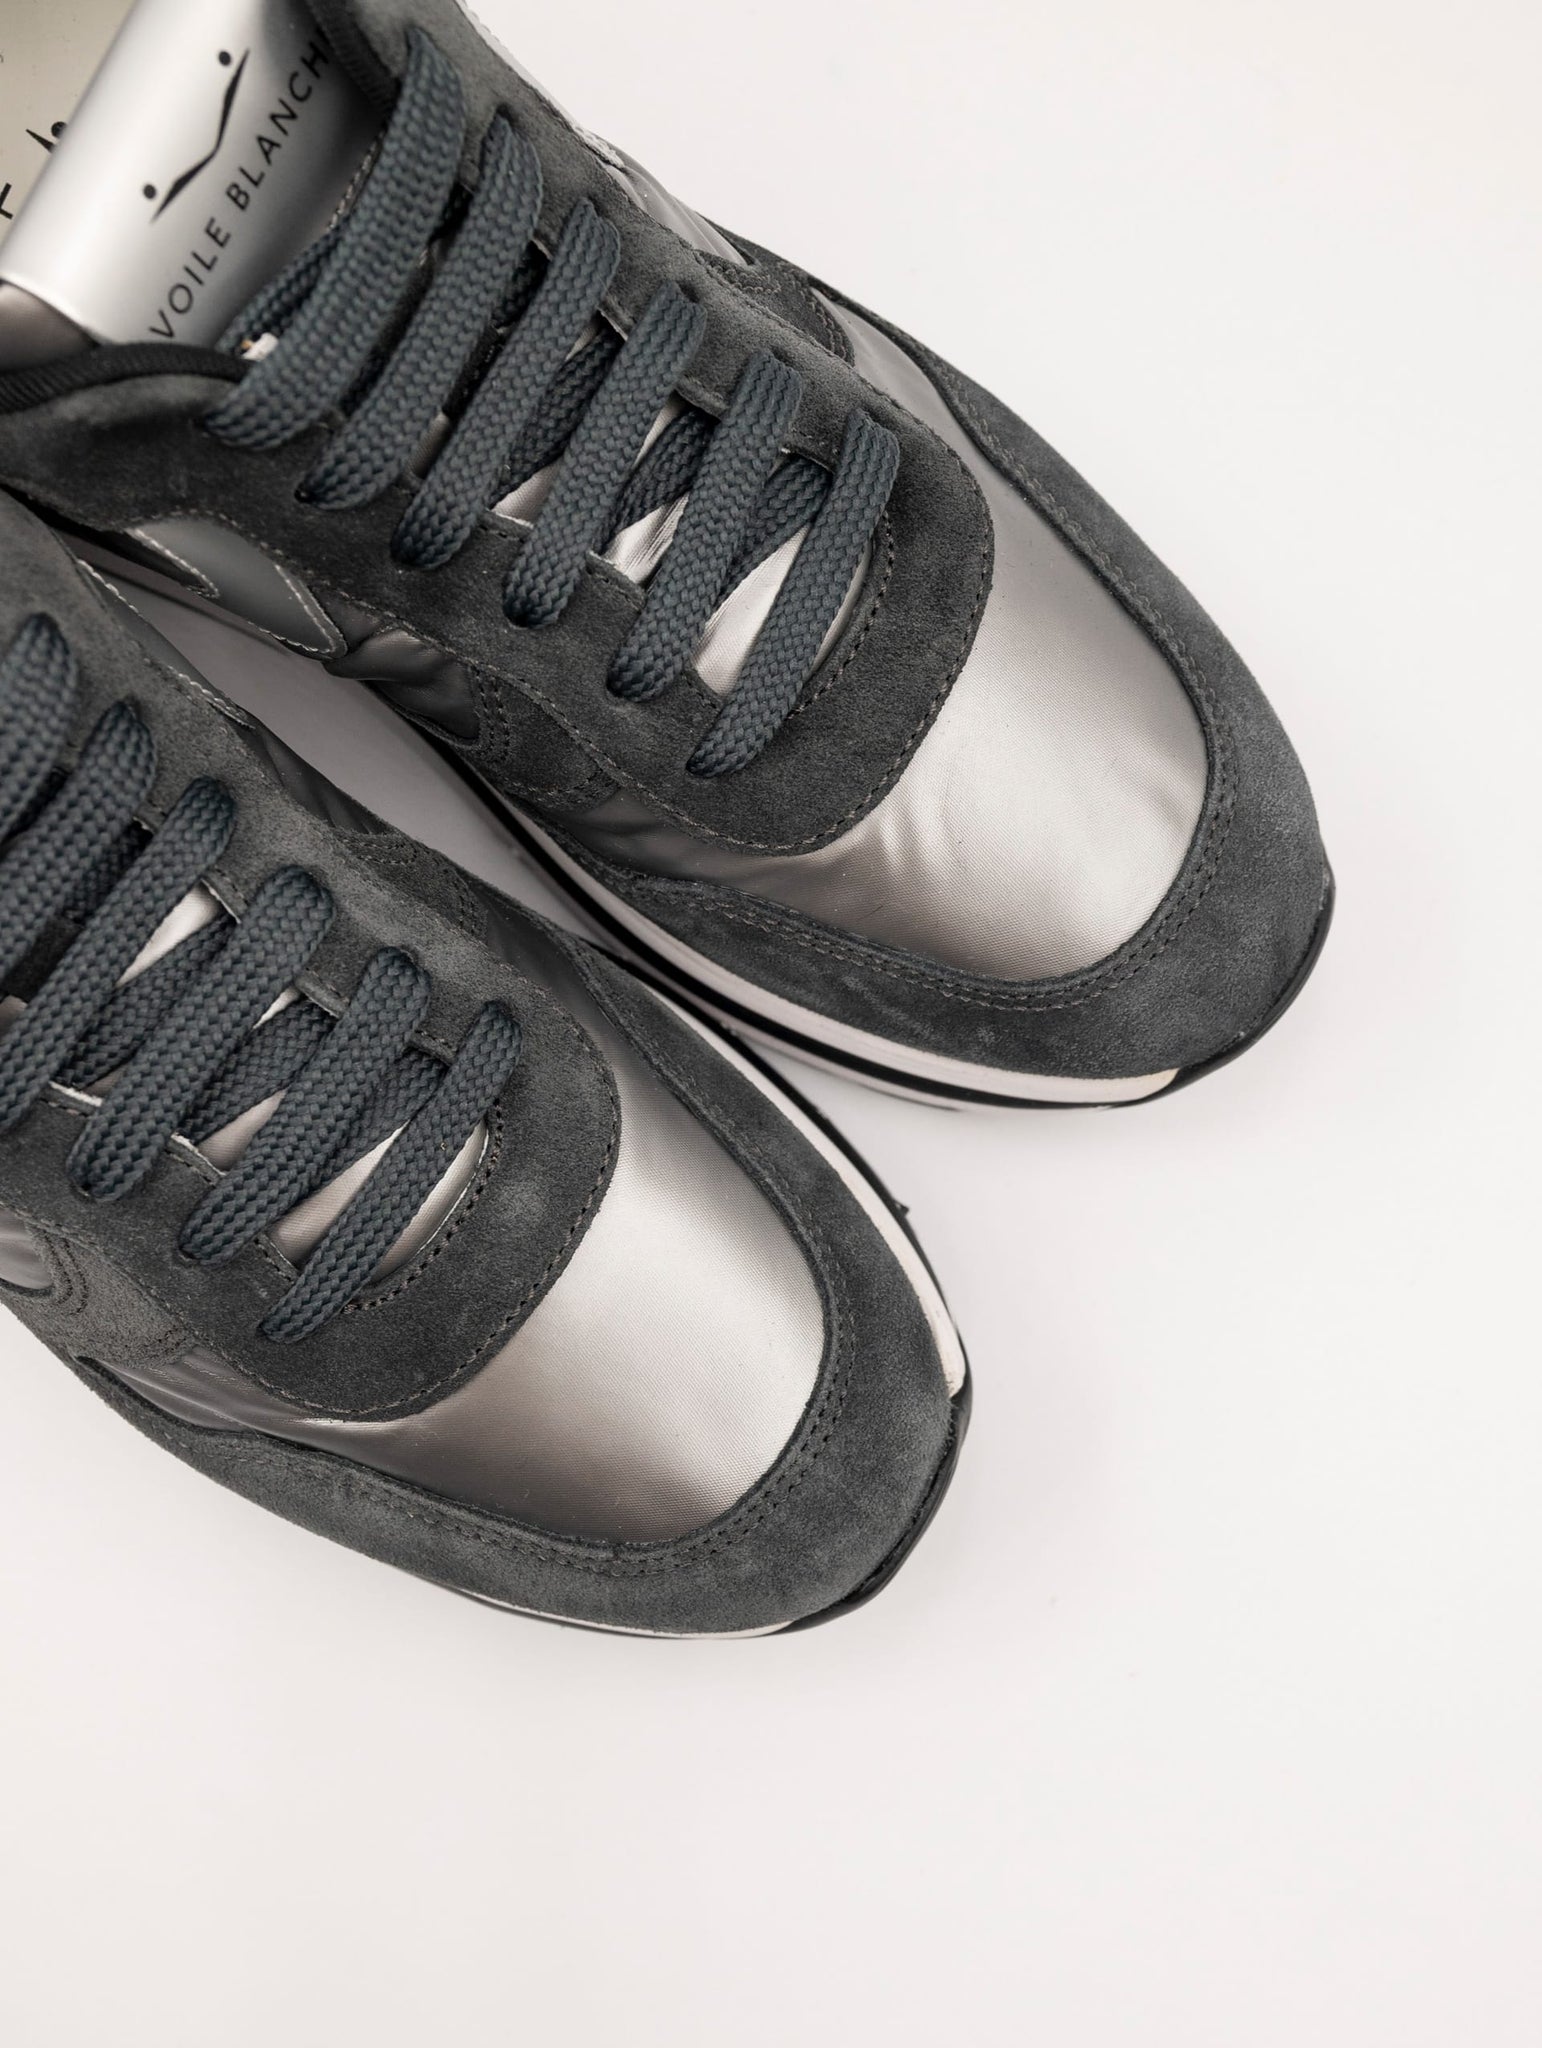 Sneakers Voile Blanche Maran in Suede e Nylon Antracite e Argento